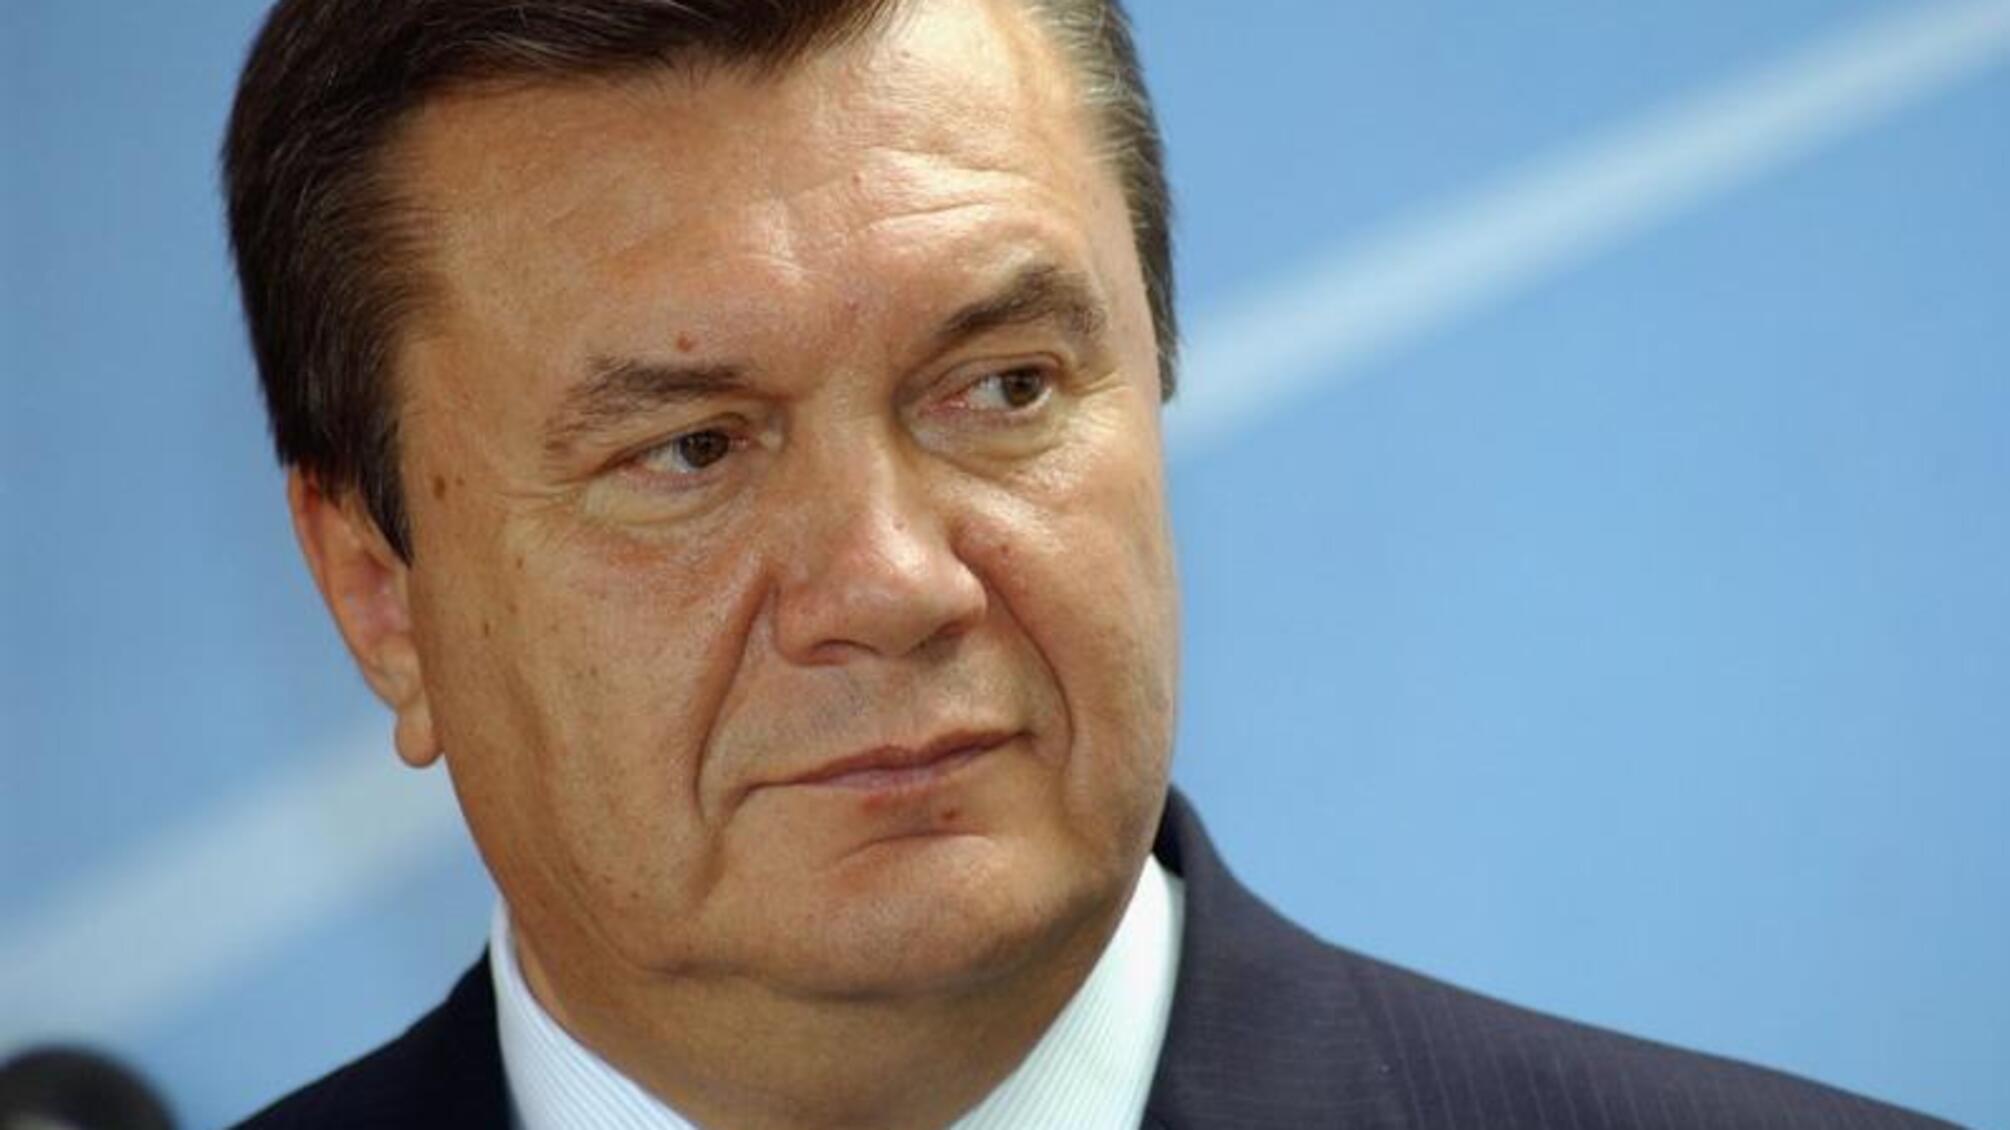 ДП 'Українські спеціальні системи' перевірить, чи було втручання у розподіл справи Януковича